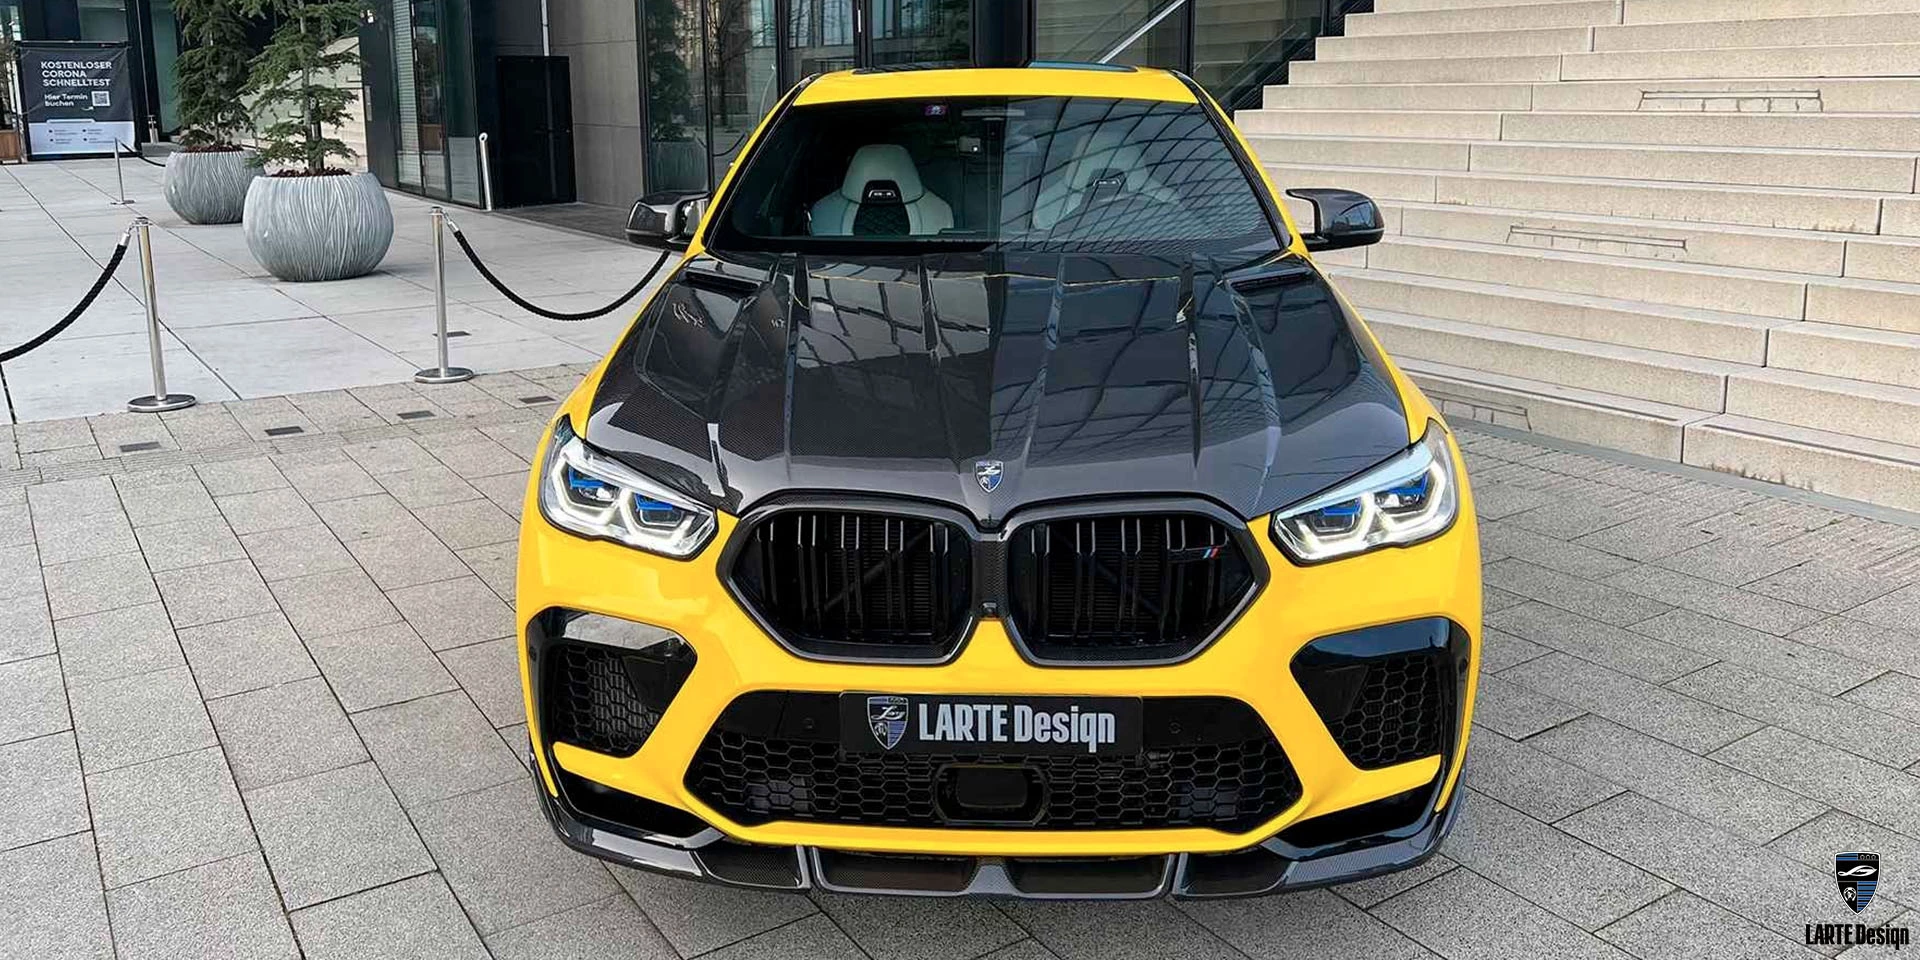 Preis für die Motorabdeckung aus Kohlefaser für den LARTE Performance BMW X6 M Competition F96 in einer gelben Umhüllung